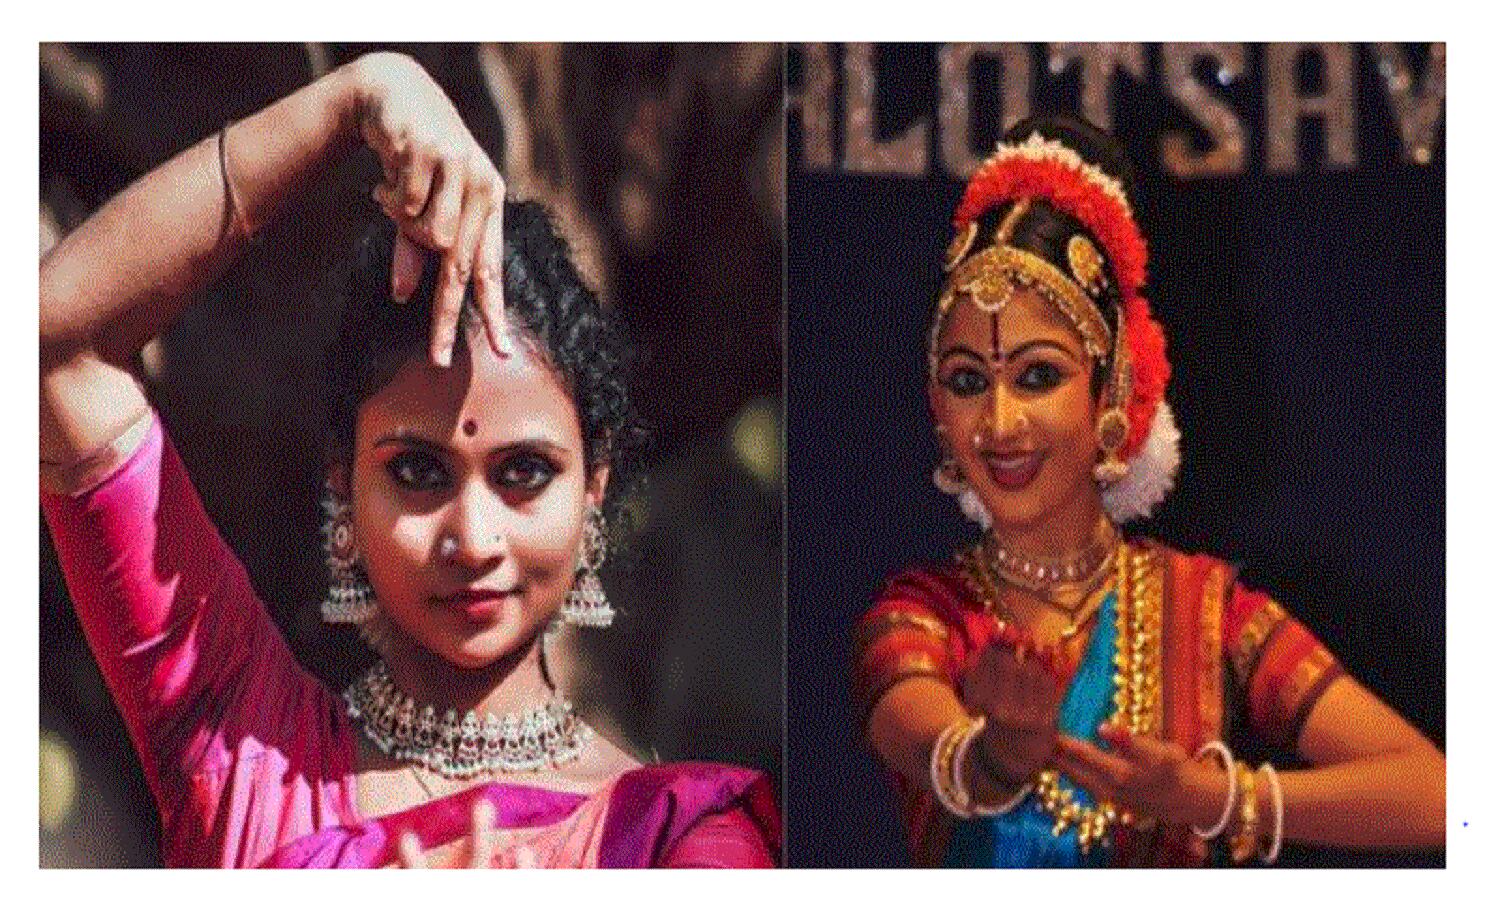 Kerala के मंदिरों में डांस कंपीटिशन के मुद्दे पर भेदभाव, 2 कलाकारों ने किया विरोध, विवाद पकड़ सकता है तूल